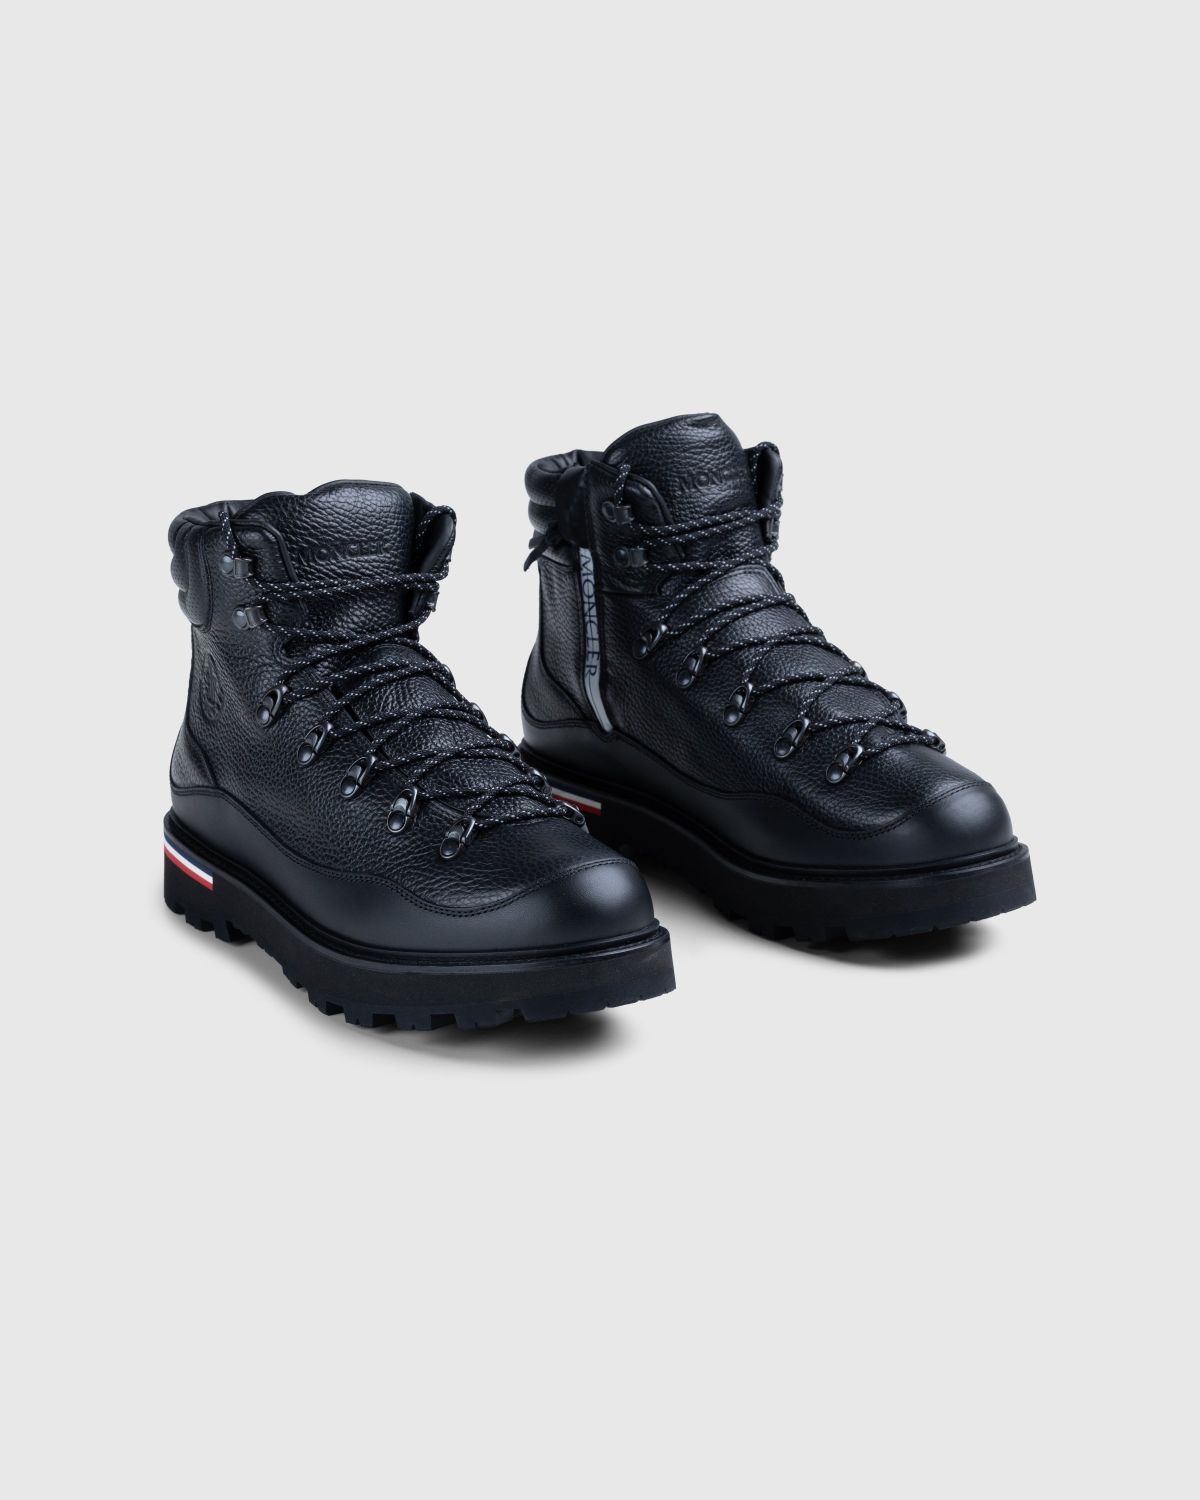 Moncler – Peka Trek Hiking Boots Grey - Sneakers - Grey - Image 3